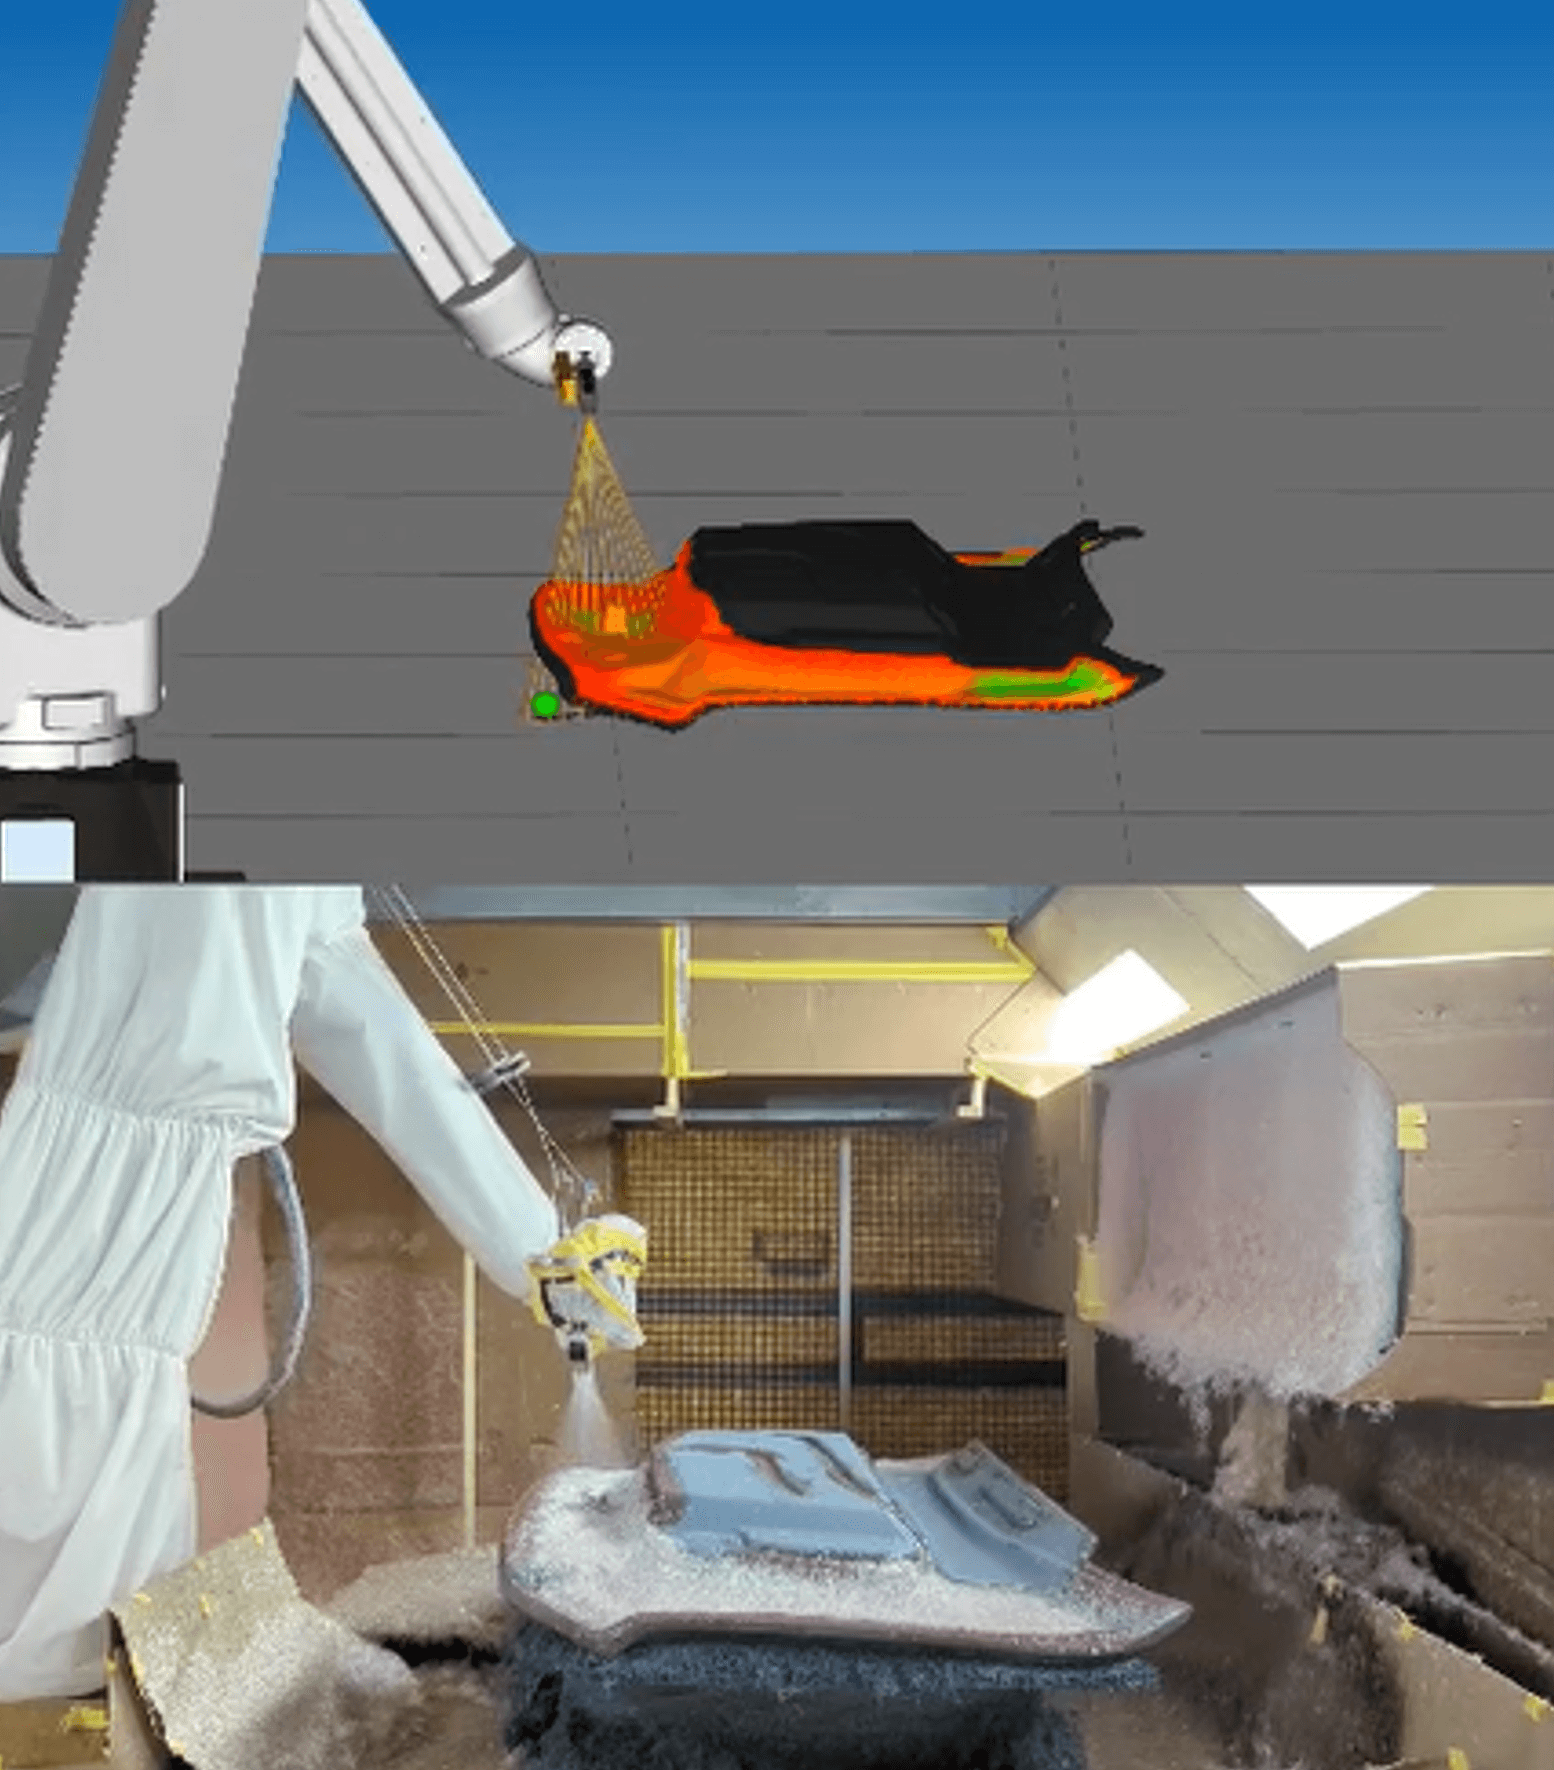 FANUC Robots painting 3D simulation